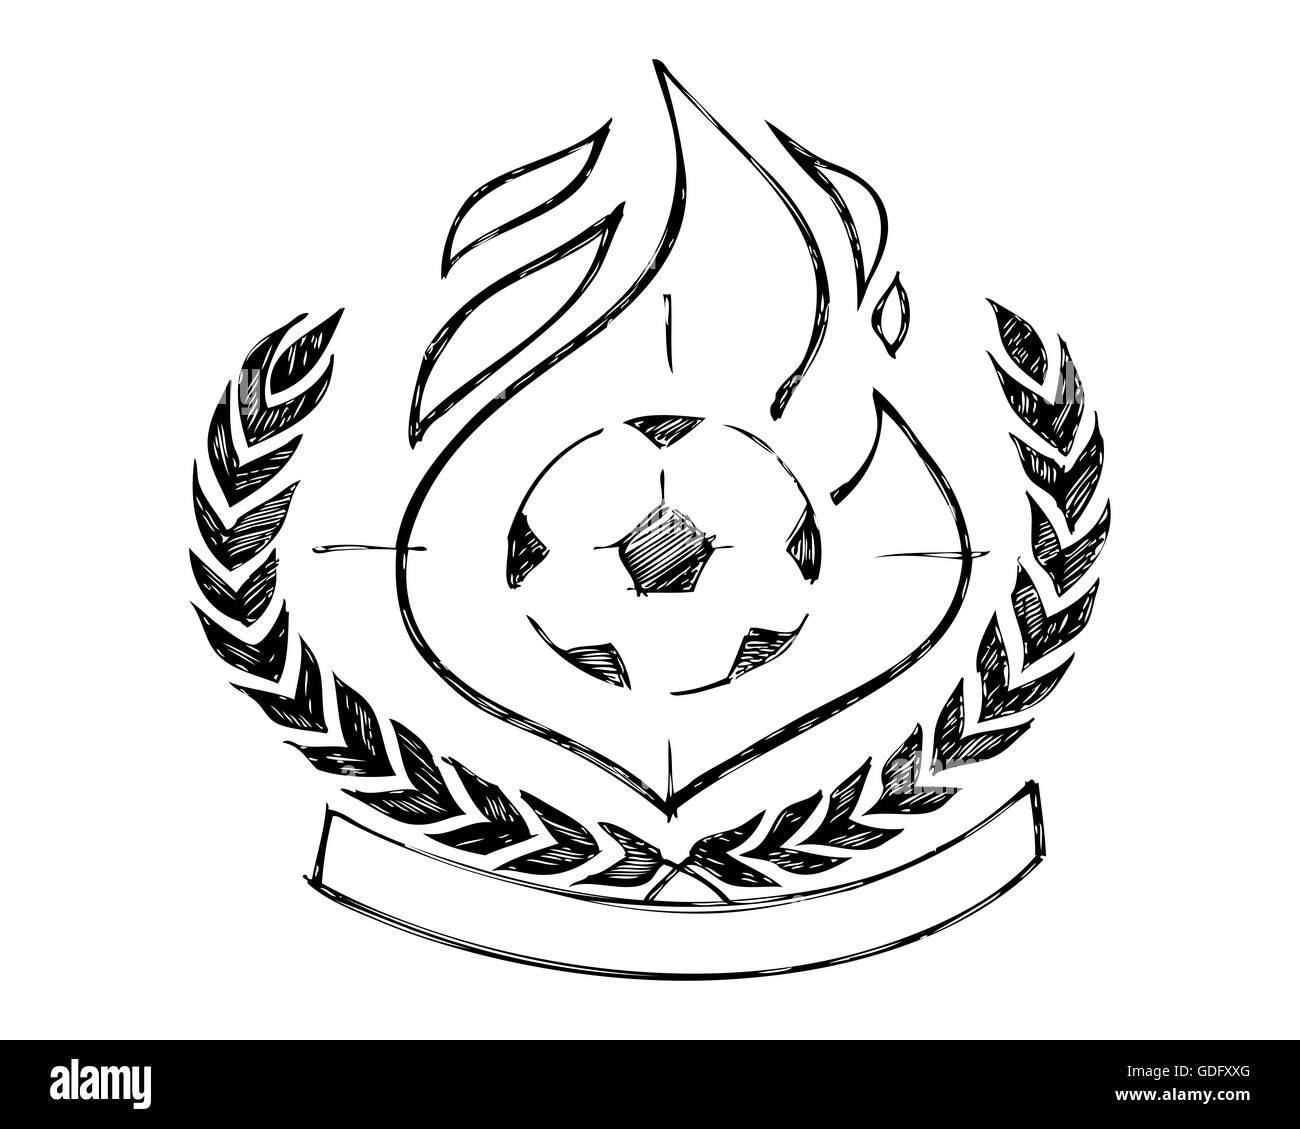 Illustration à la main ou d'un dessin ou un symbole insigne victoire soccer Banque D'Images